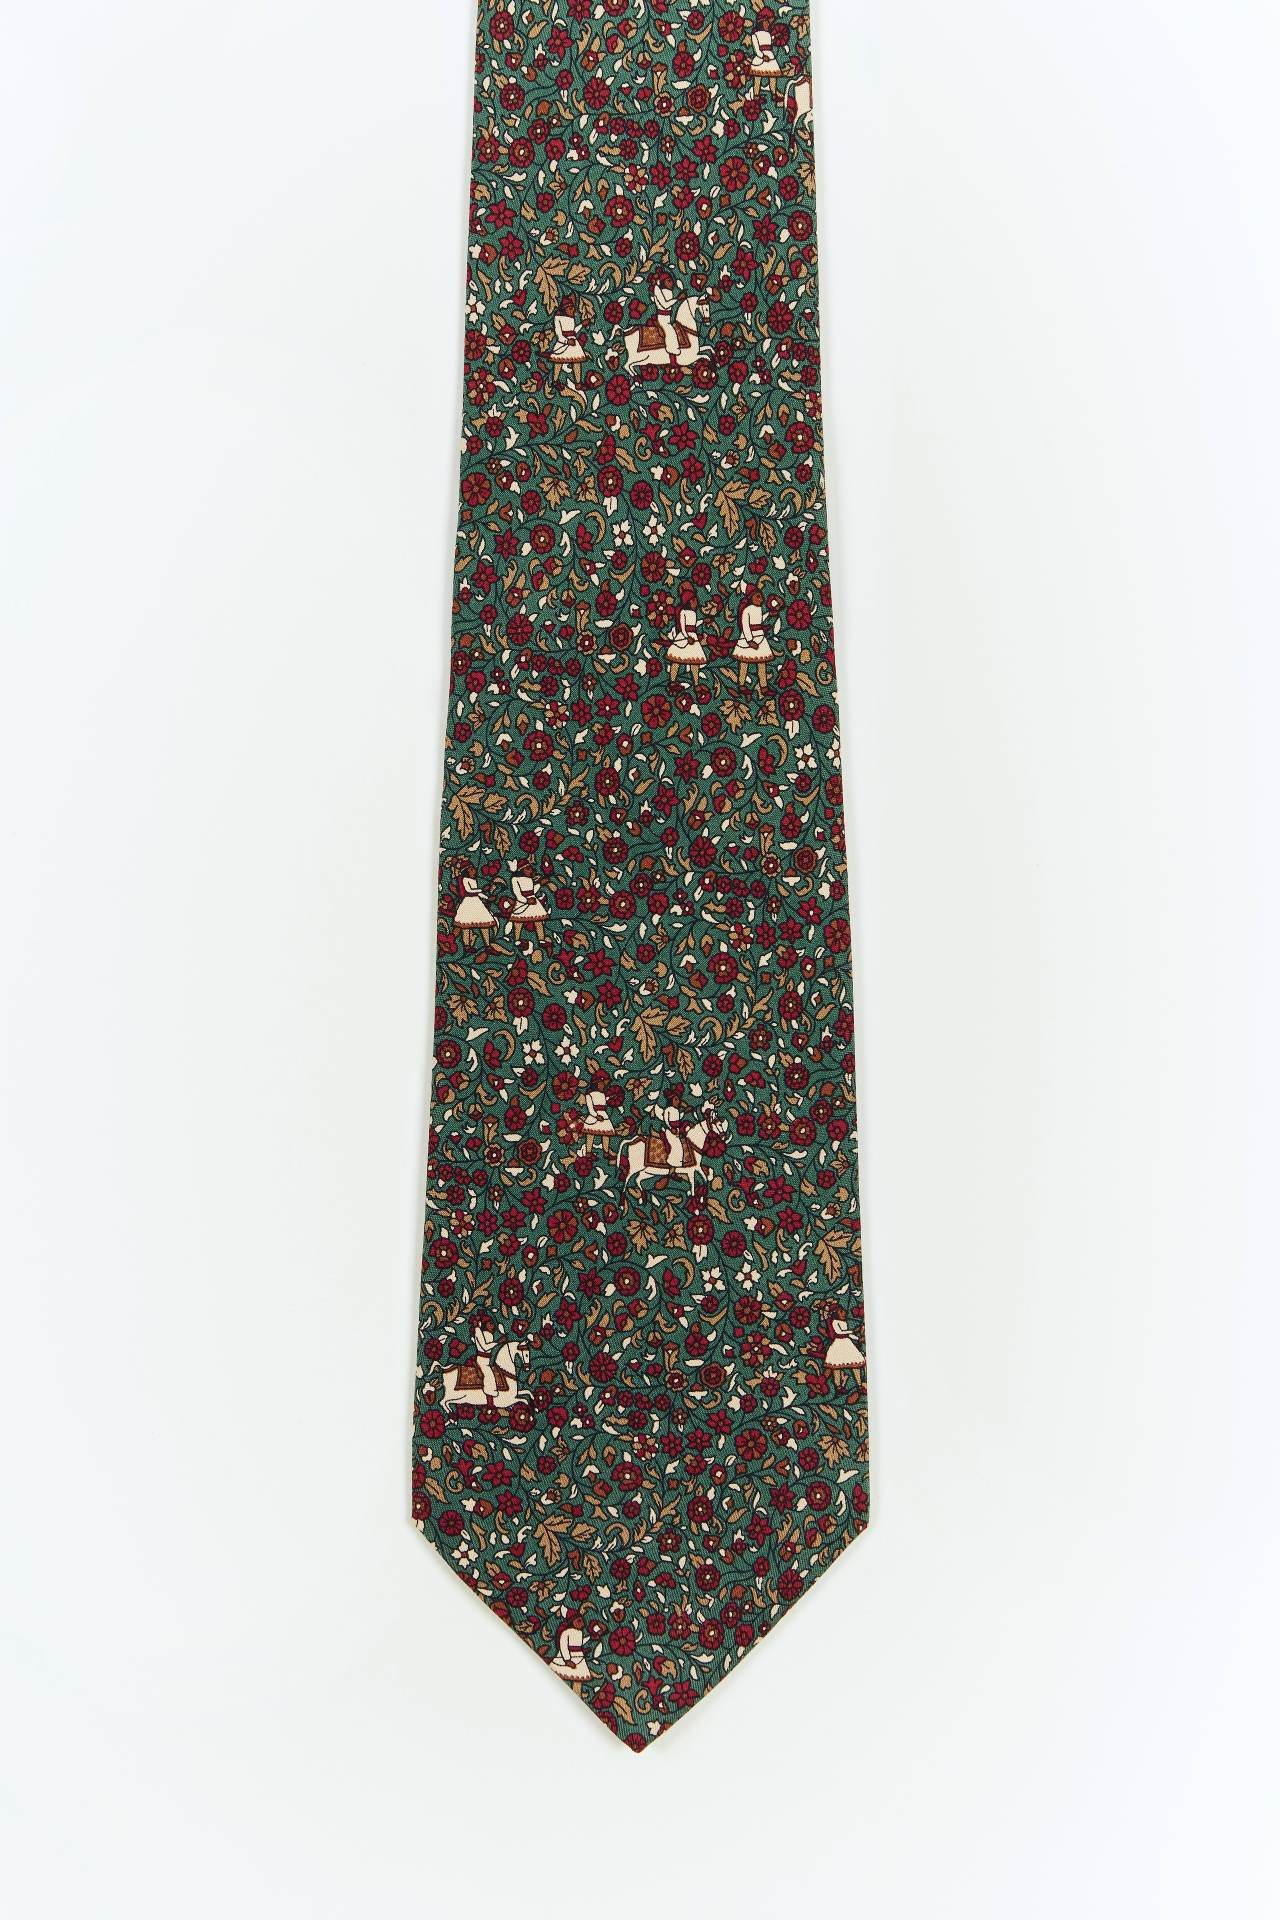 Cravate de soie Ferragamo